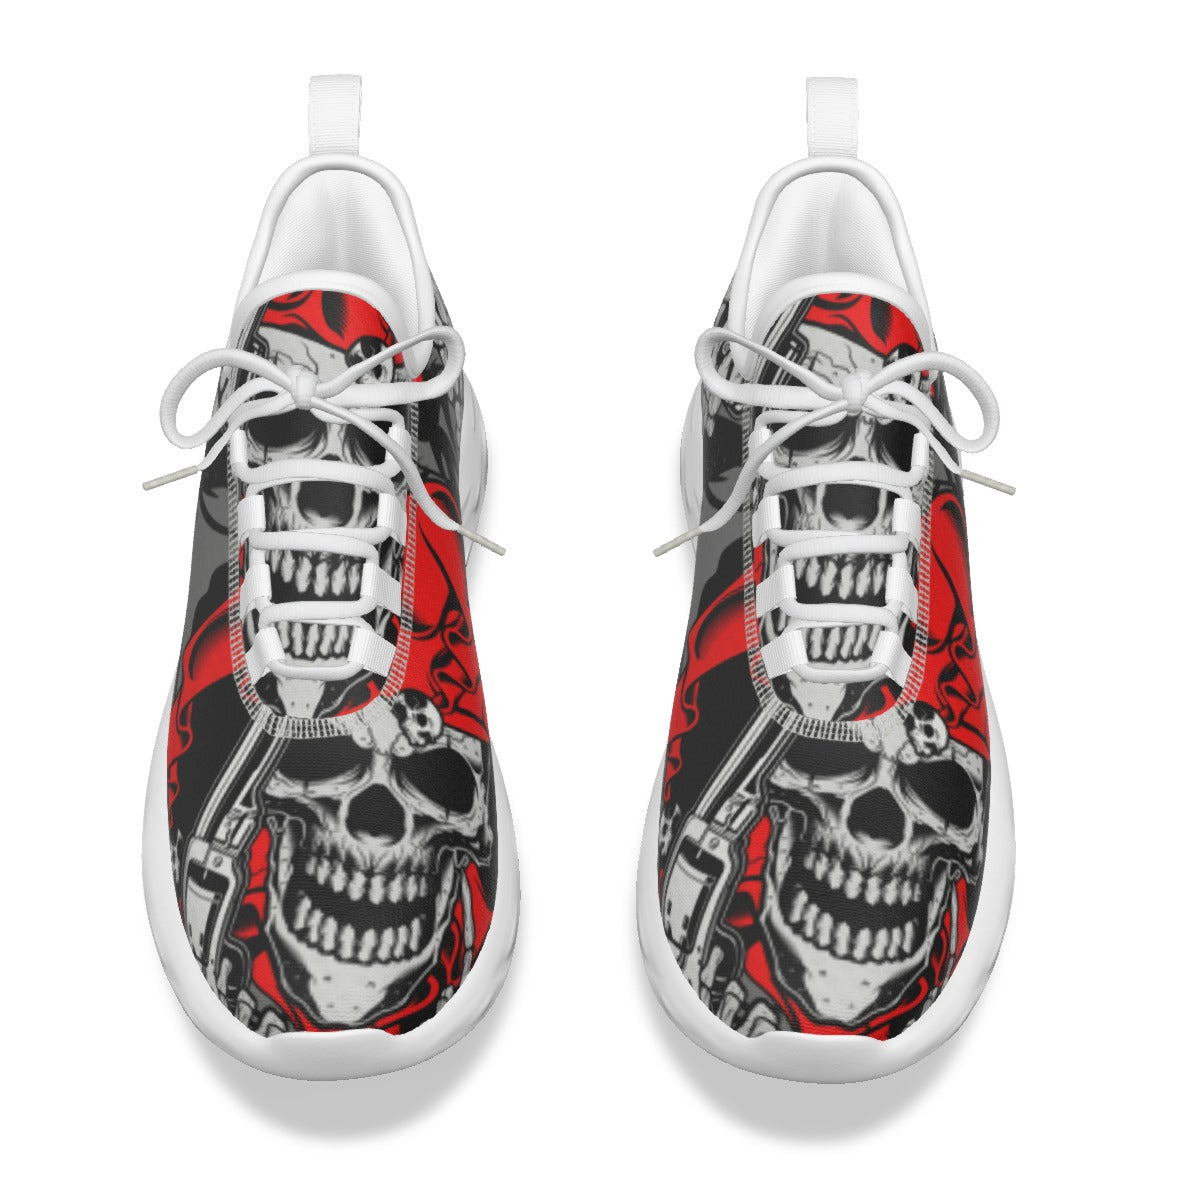 Gothic skull men's shoes